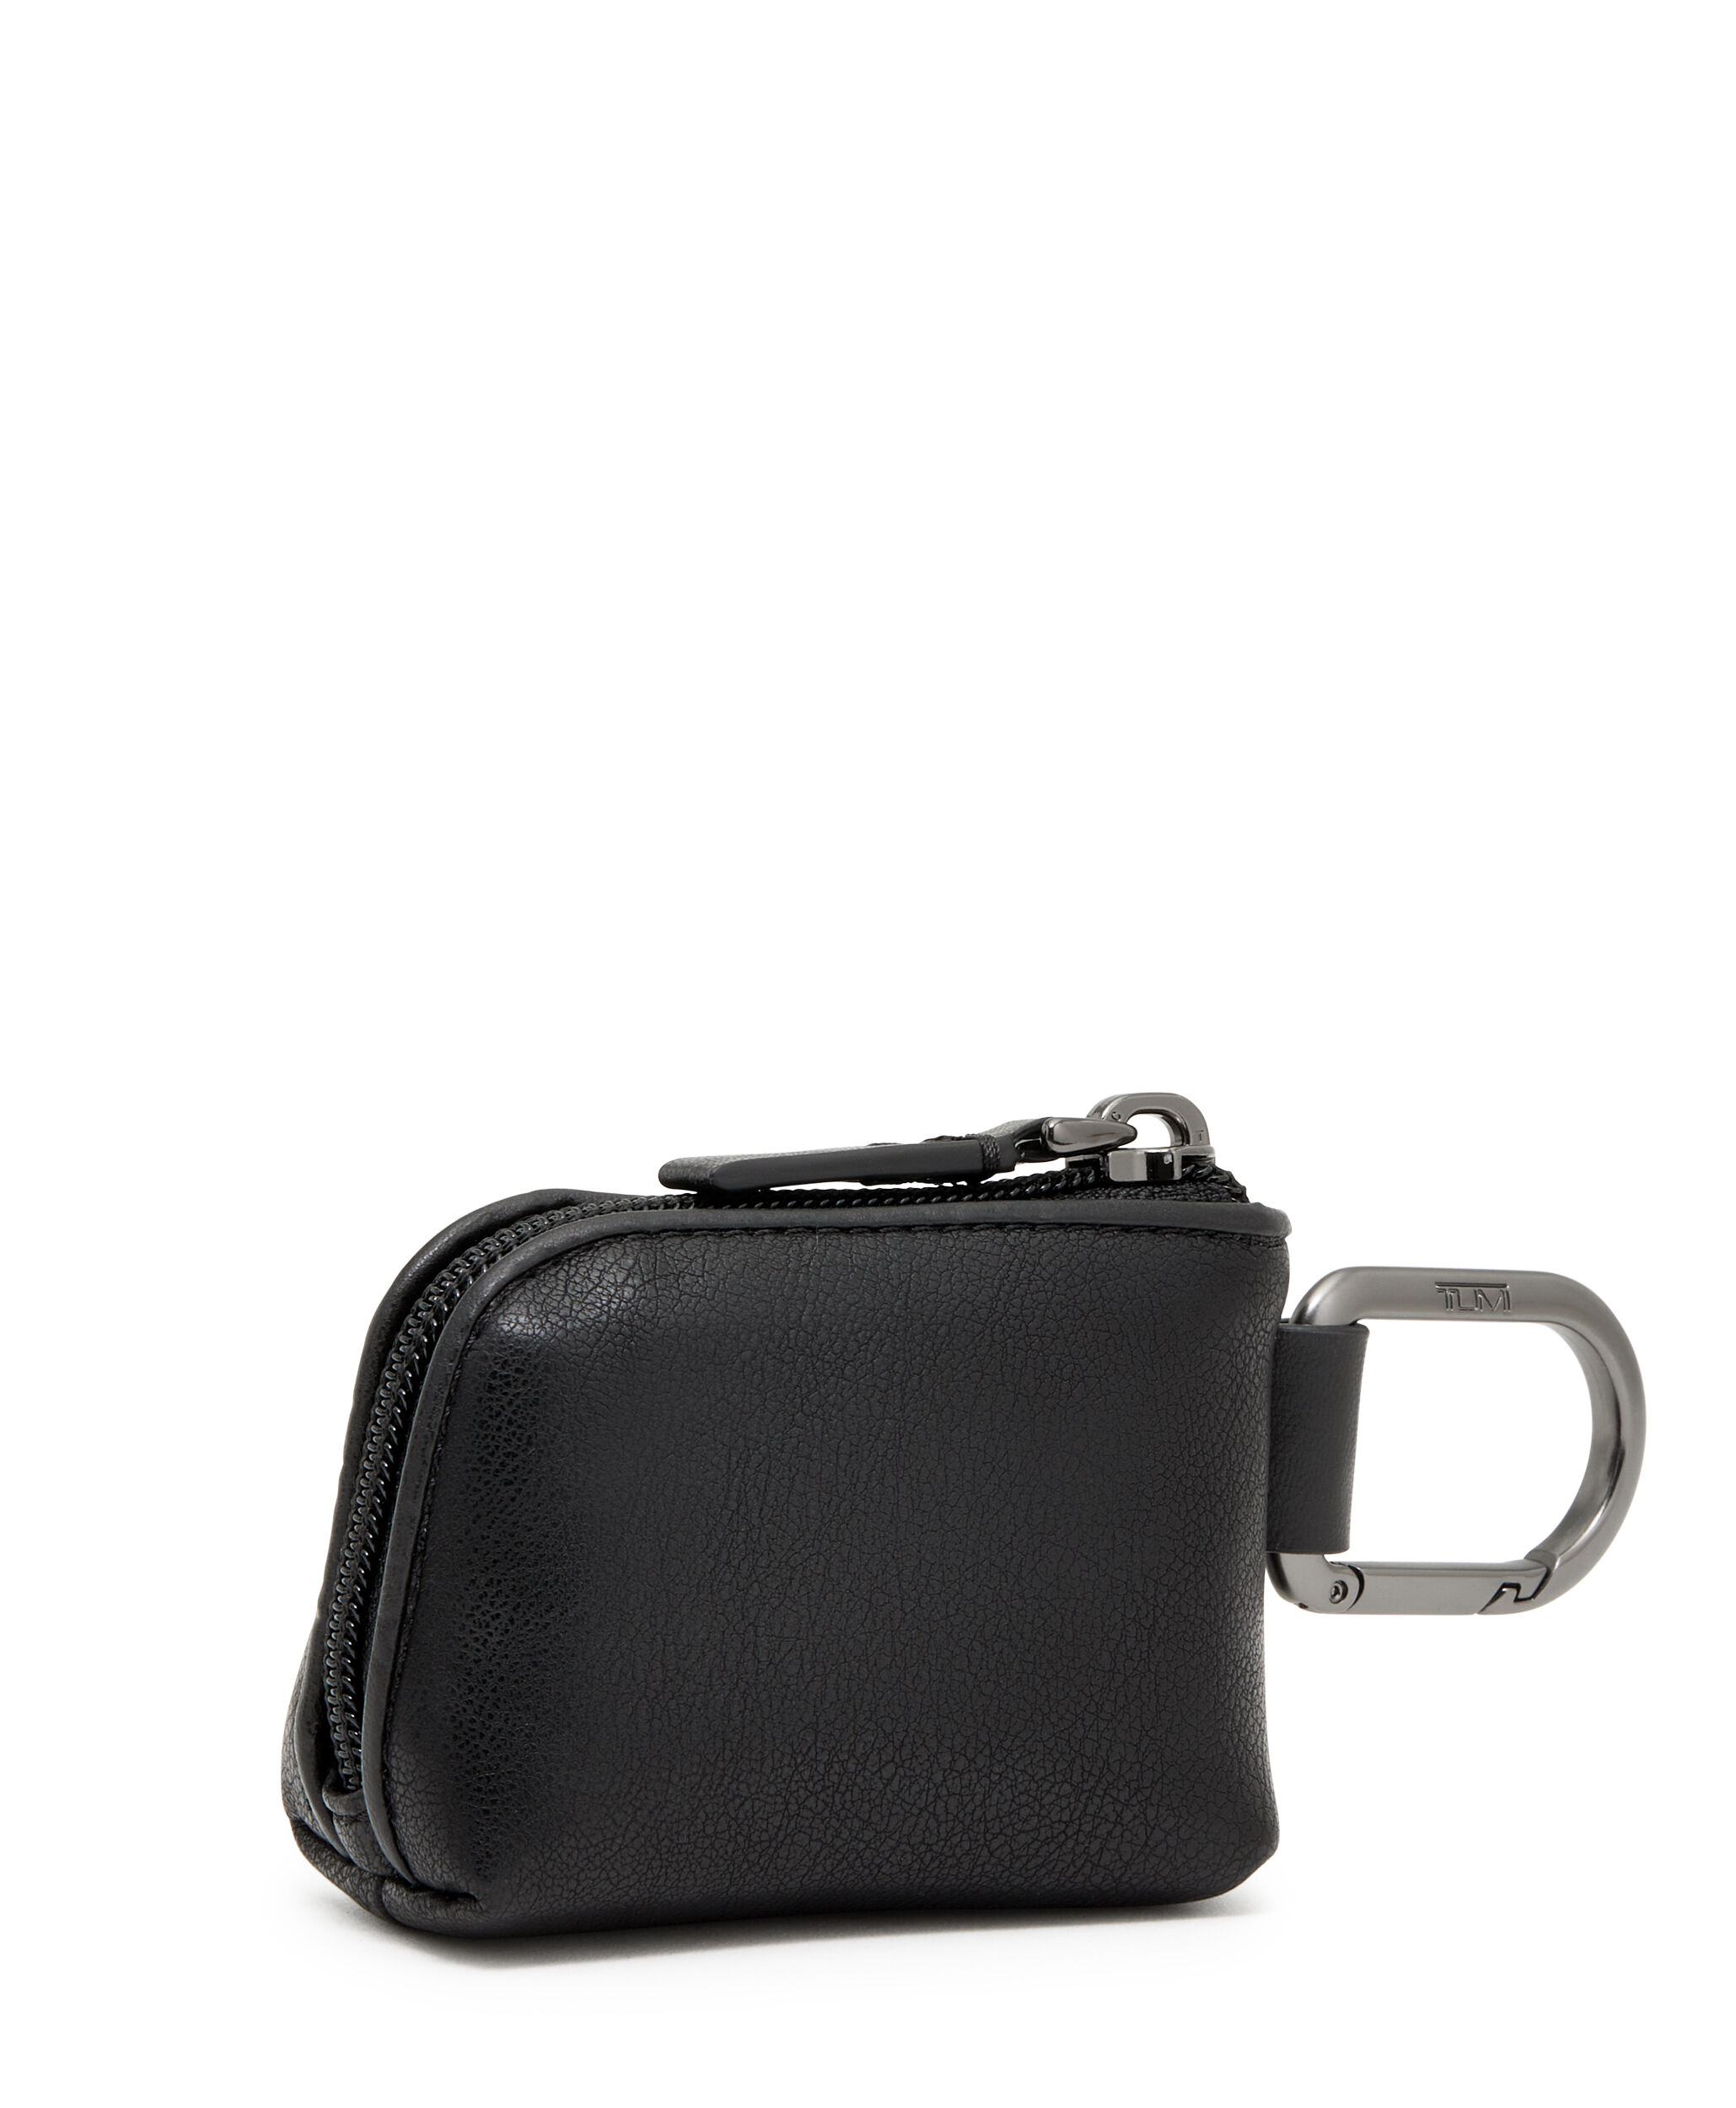 Buy Grey Handbags for Women by Mark & Keith Online | Ajio.com